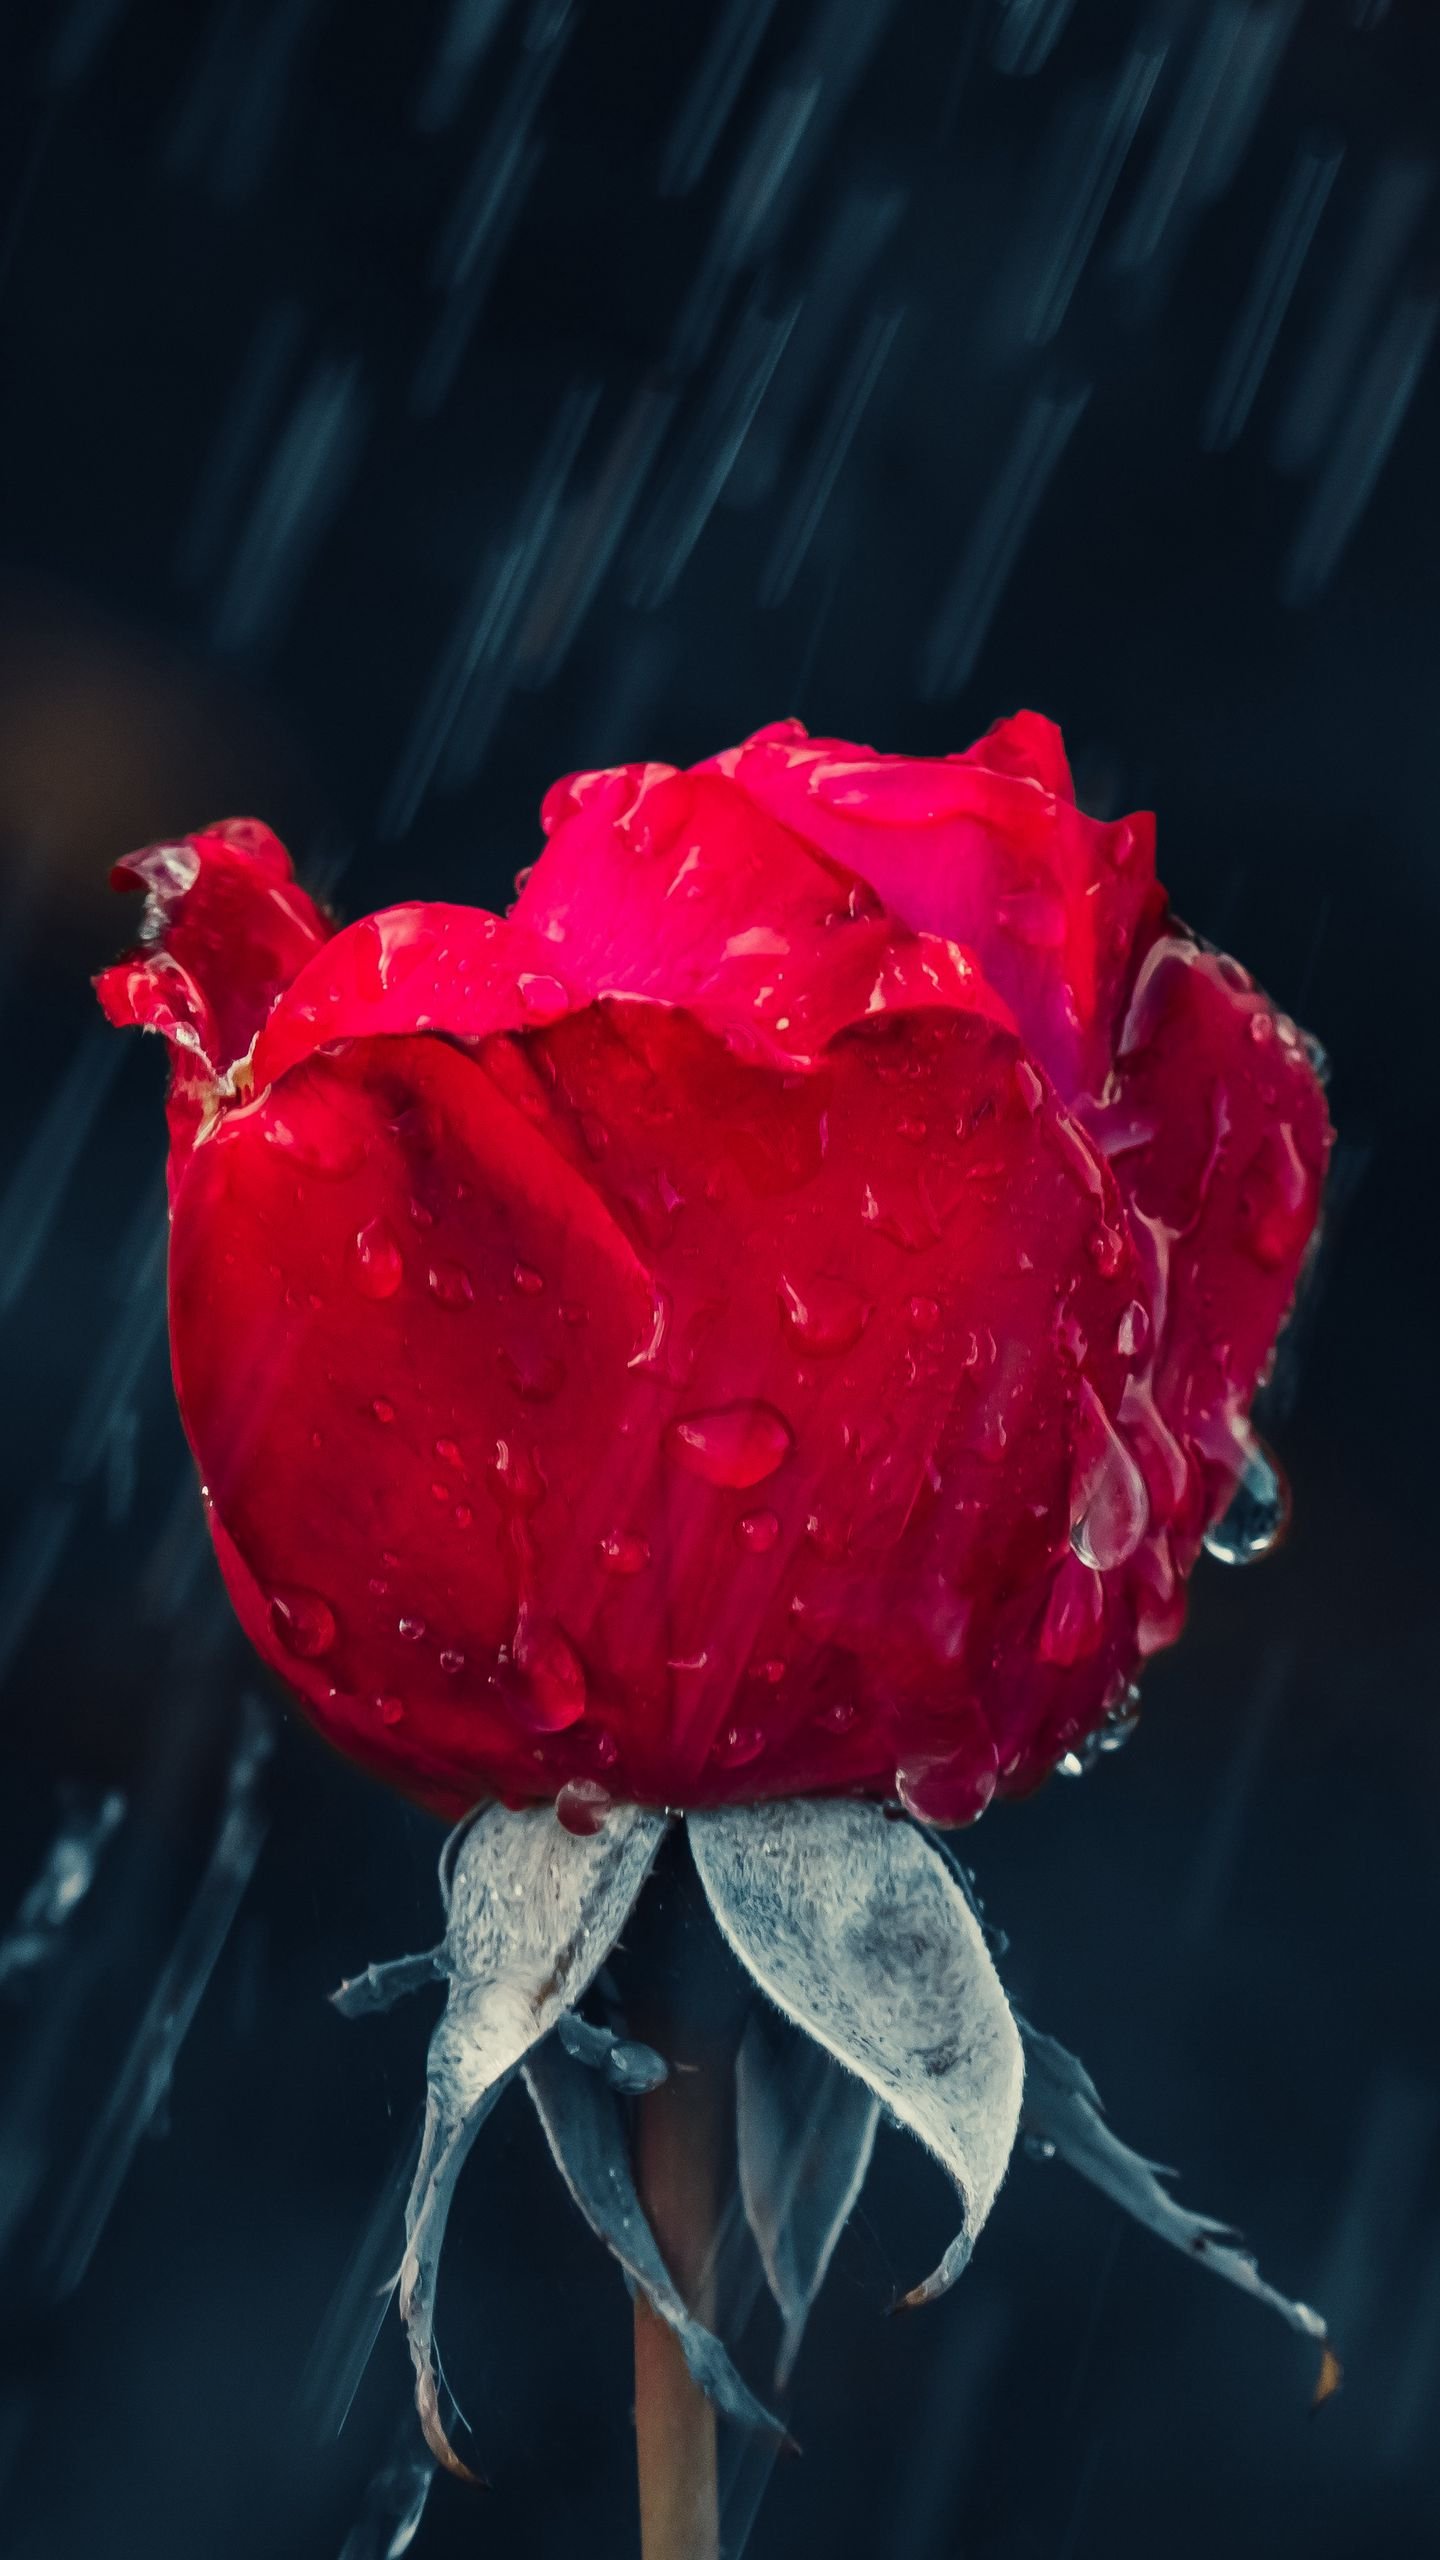 Red rose rain drops